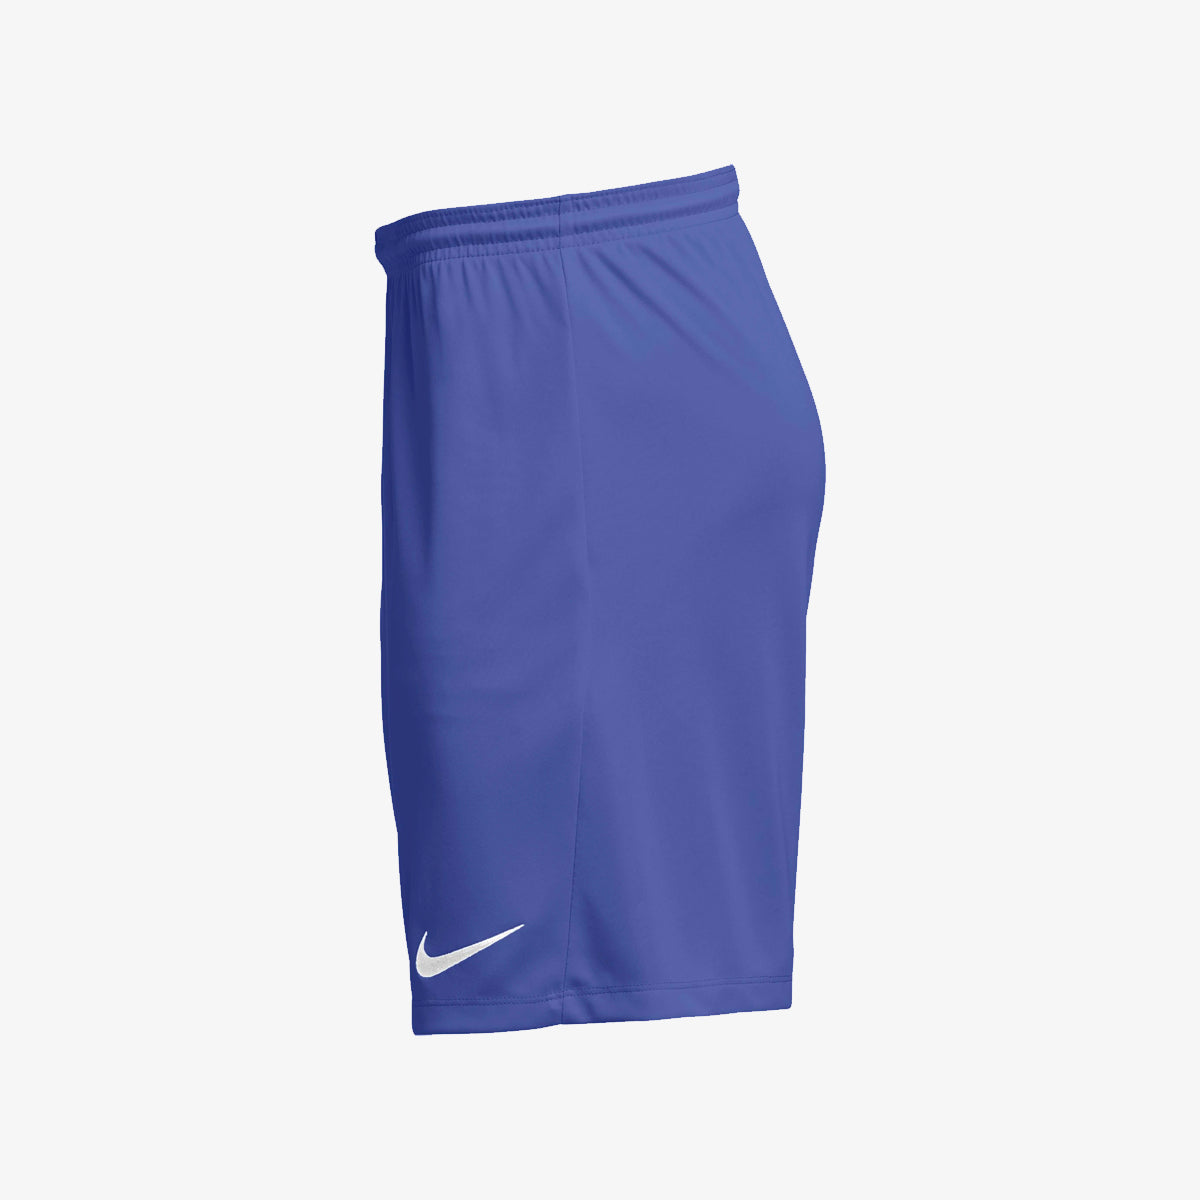 Nike Dri-FIT Park Men's Knit Soccer Shorts.